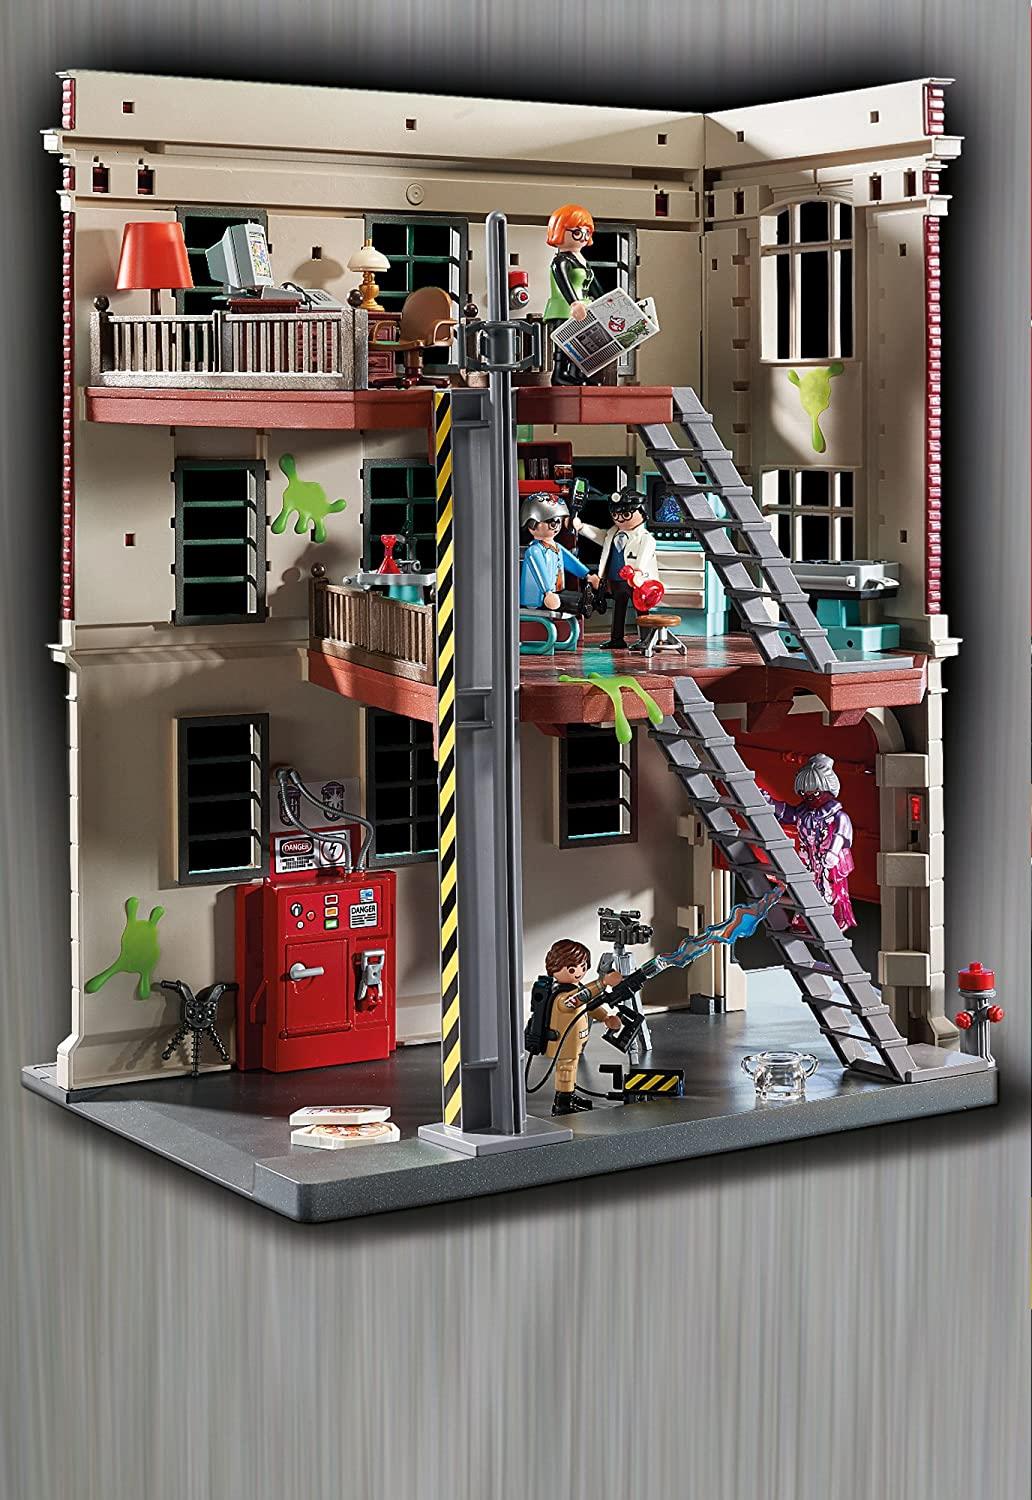 Quartier général de la caserne de pompiers Ghostbusters 9219 Playmobil Playset